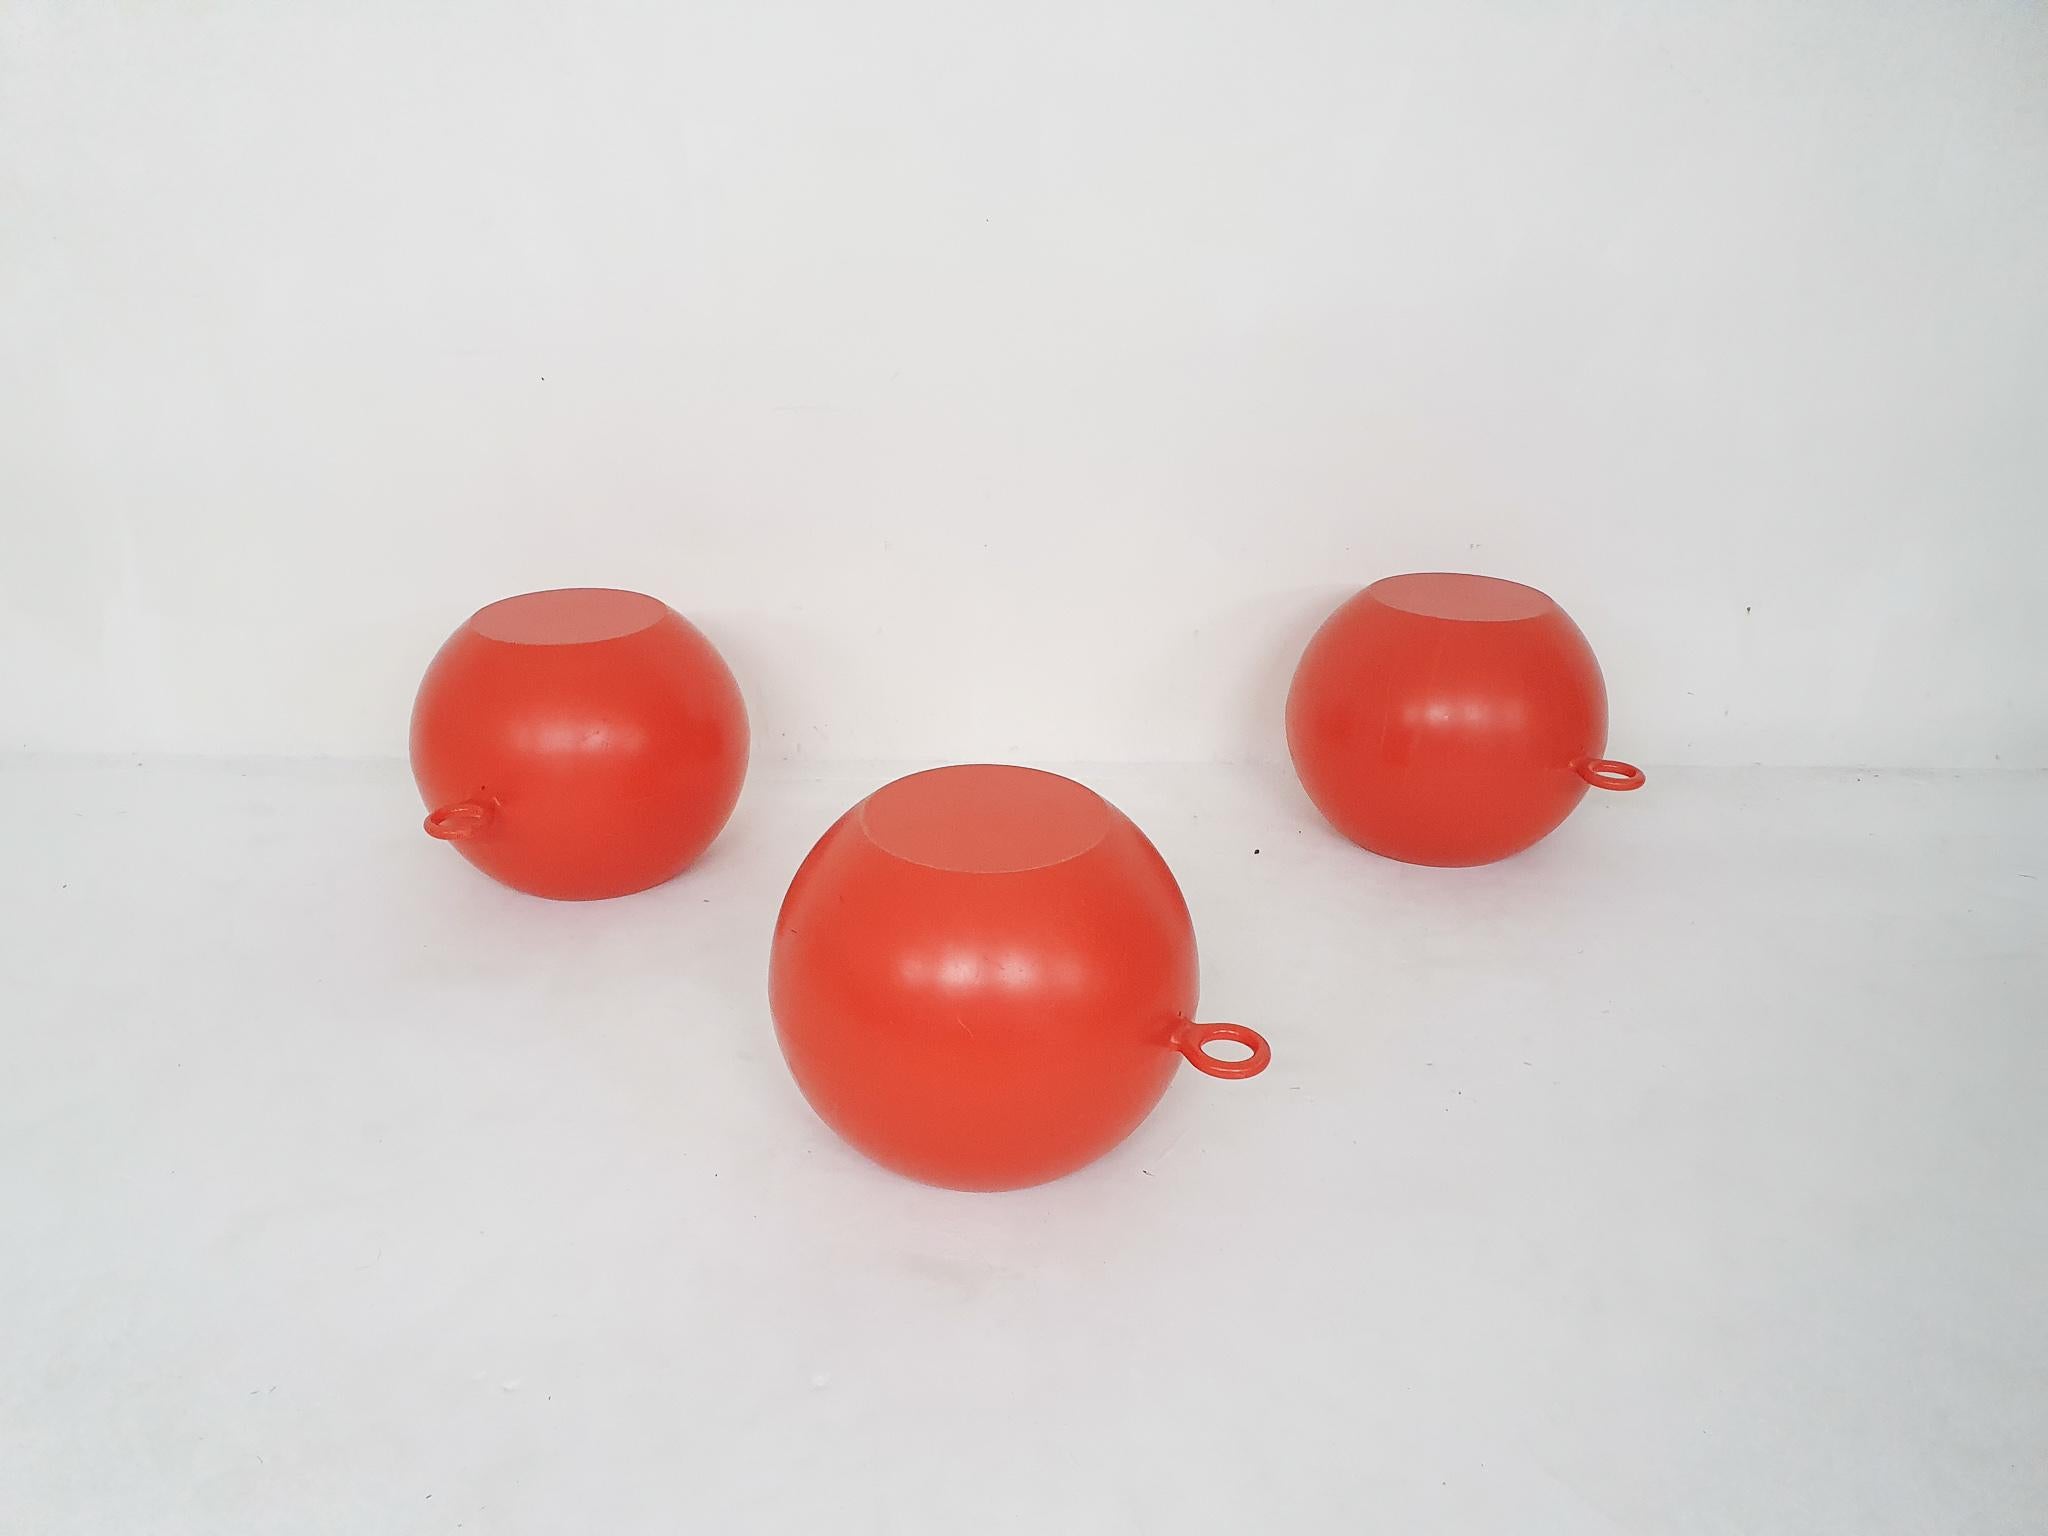 Rote Plastikhocker oder Beistelltische für drinnen und draußen. Entworfen von Richard Hutten für Gispen im Jahr 2000
Einige Kratzer im Kunststoff.